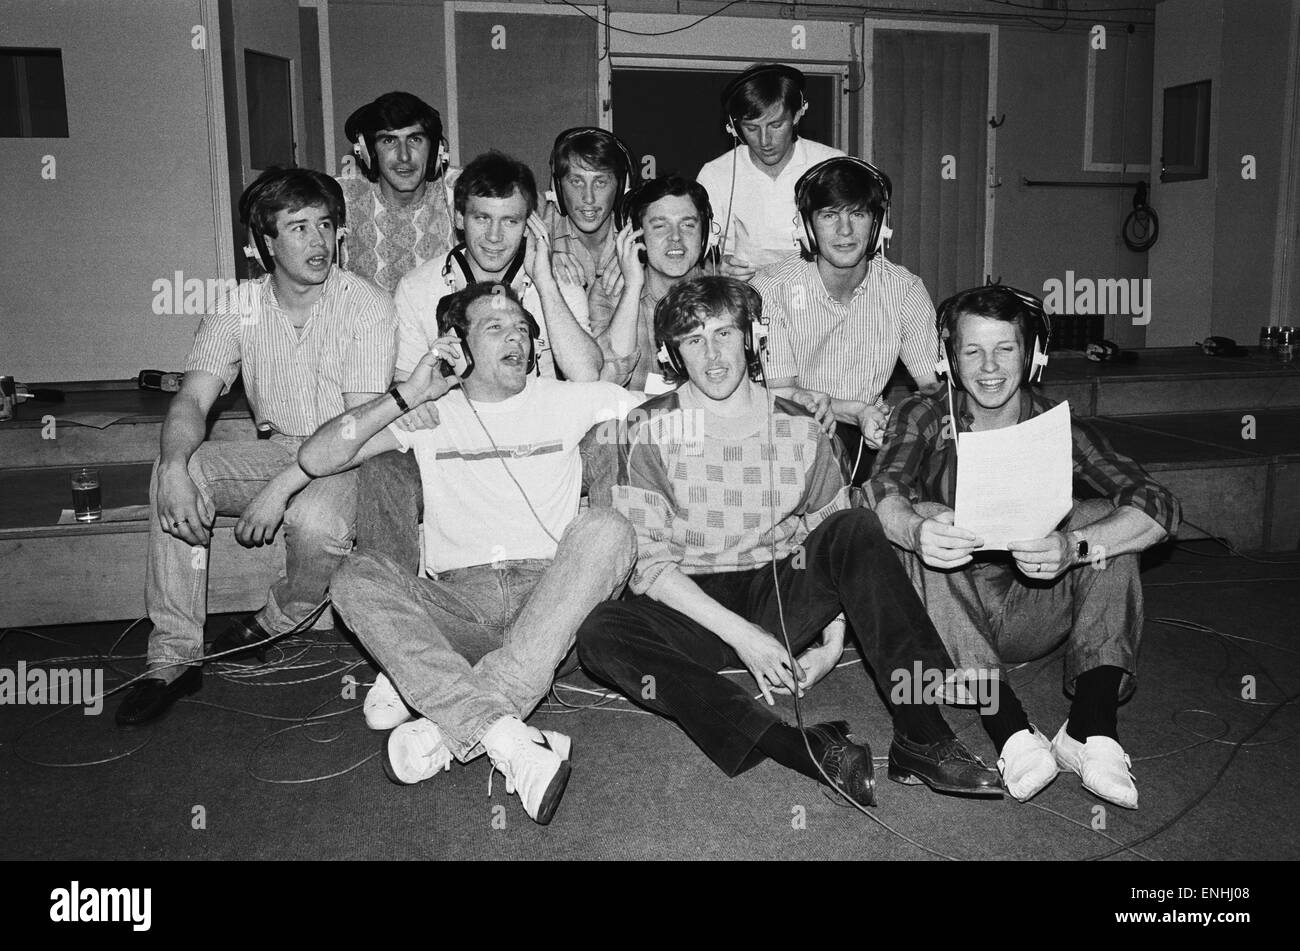 Everton Football faire un enregistrement à Abbey Road studios à St John's Wood. En Photo : Ian Atkins, Gary Stevens, Adrian Heath, Peter Reid, Alan Harper, Paul Bracewell, Andy Gray, Kevin Richardson et Trevor Steven. 17 avril 1985. Banque D'Images